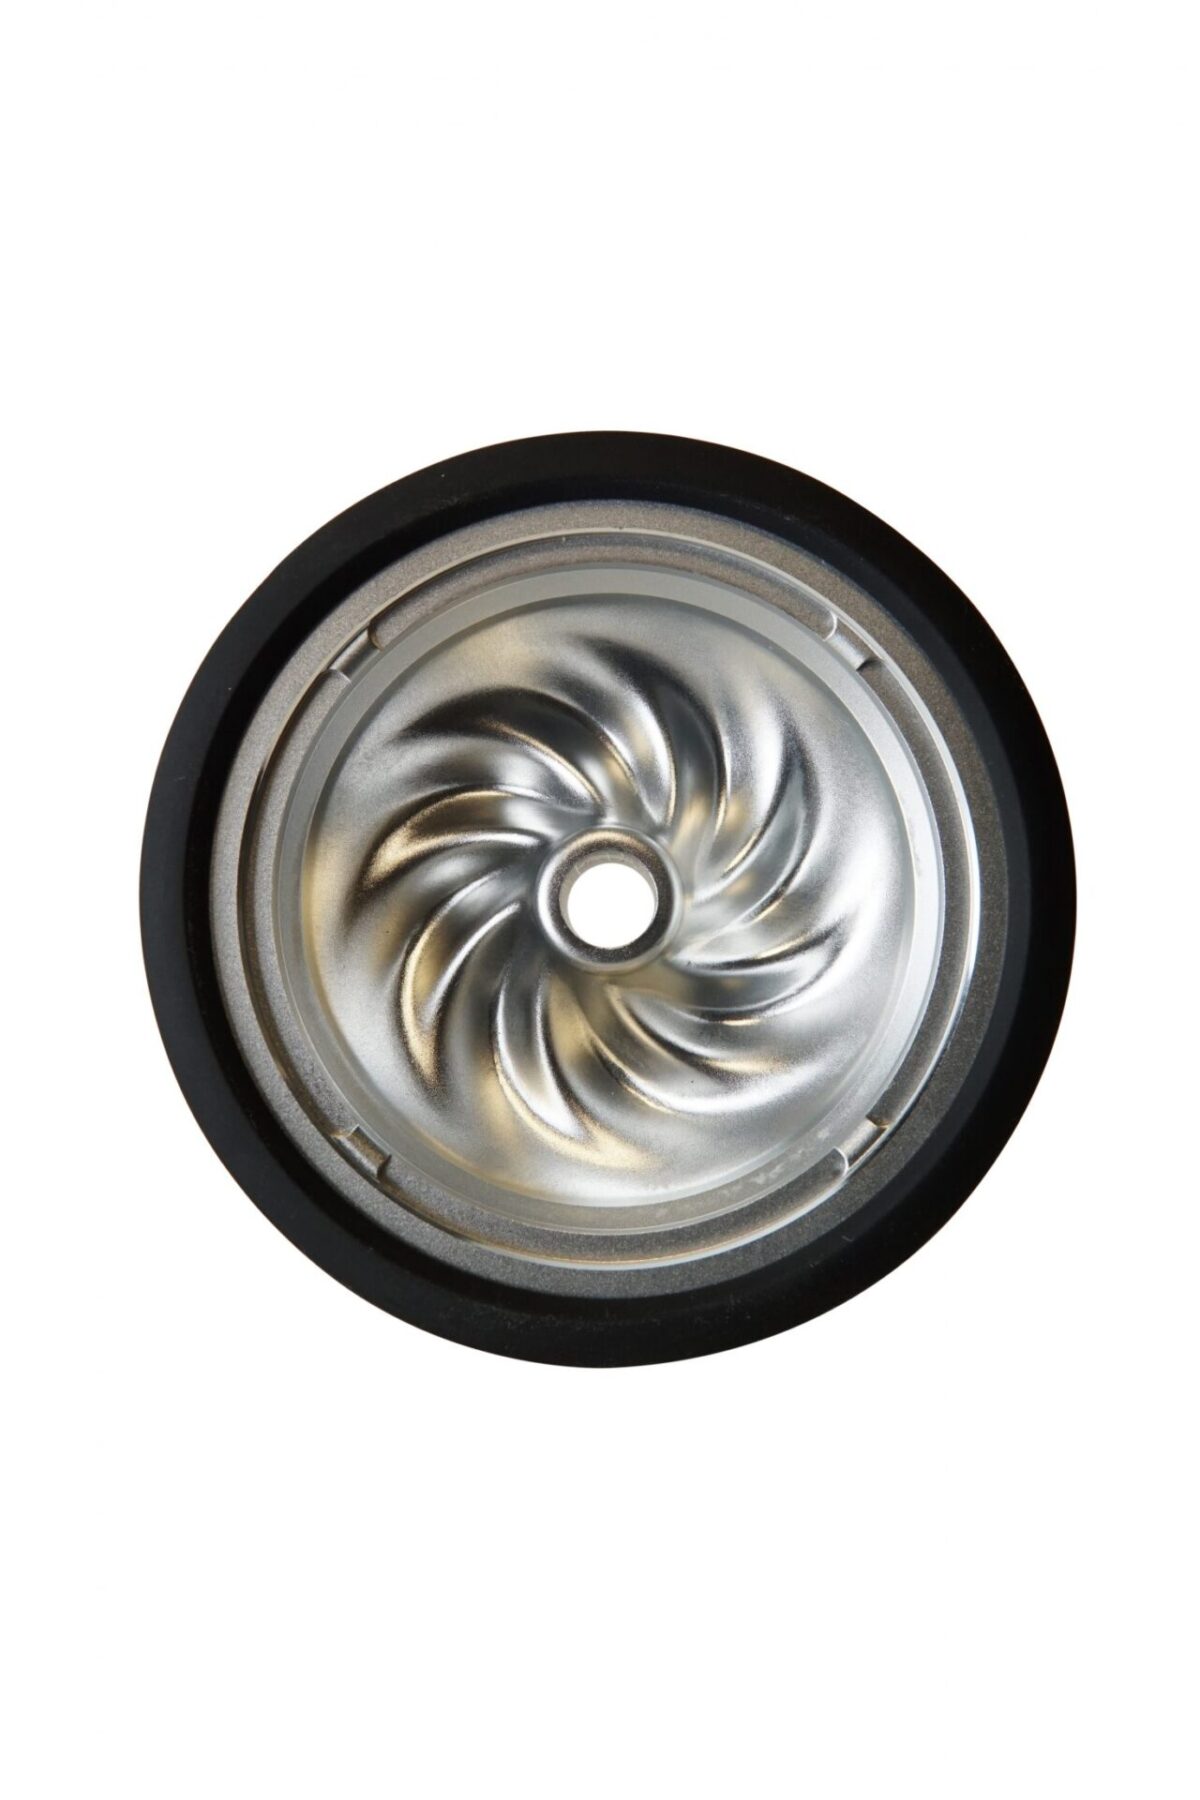 Kaloud Aluminum Samsaris Bowl For Lotus Ii